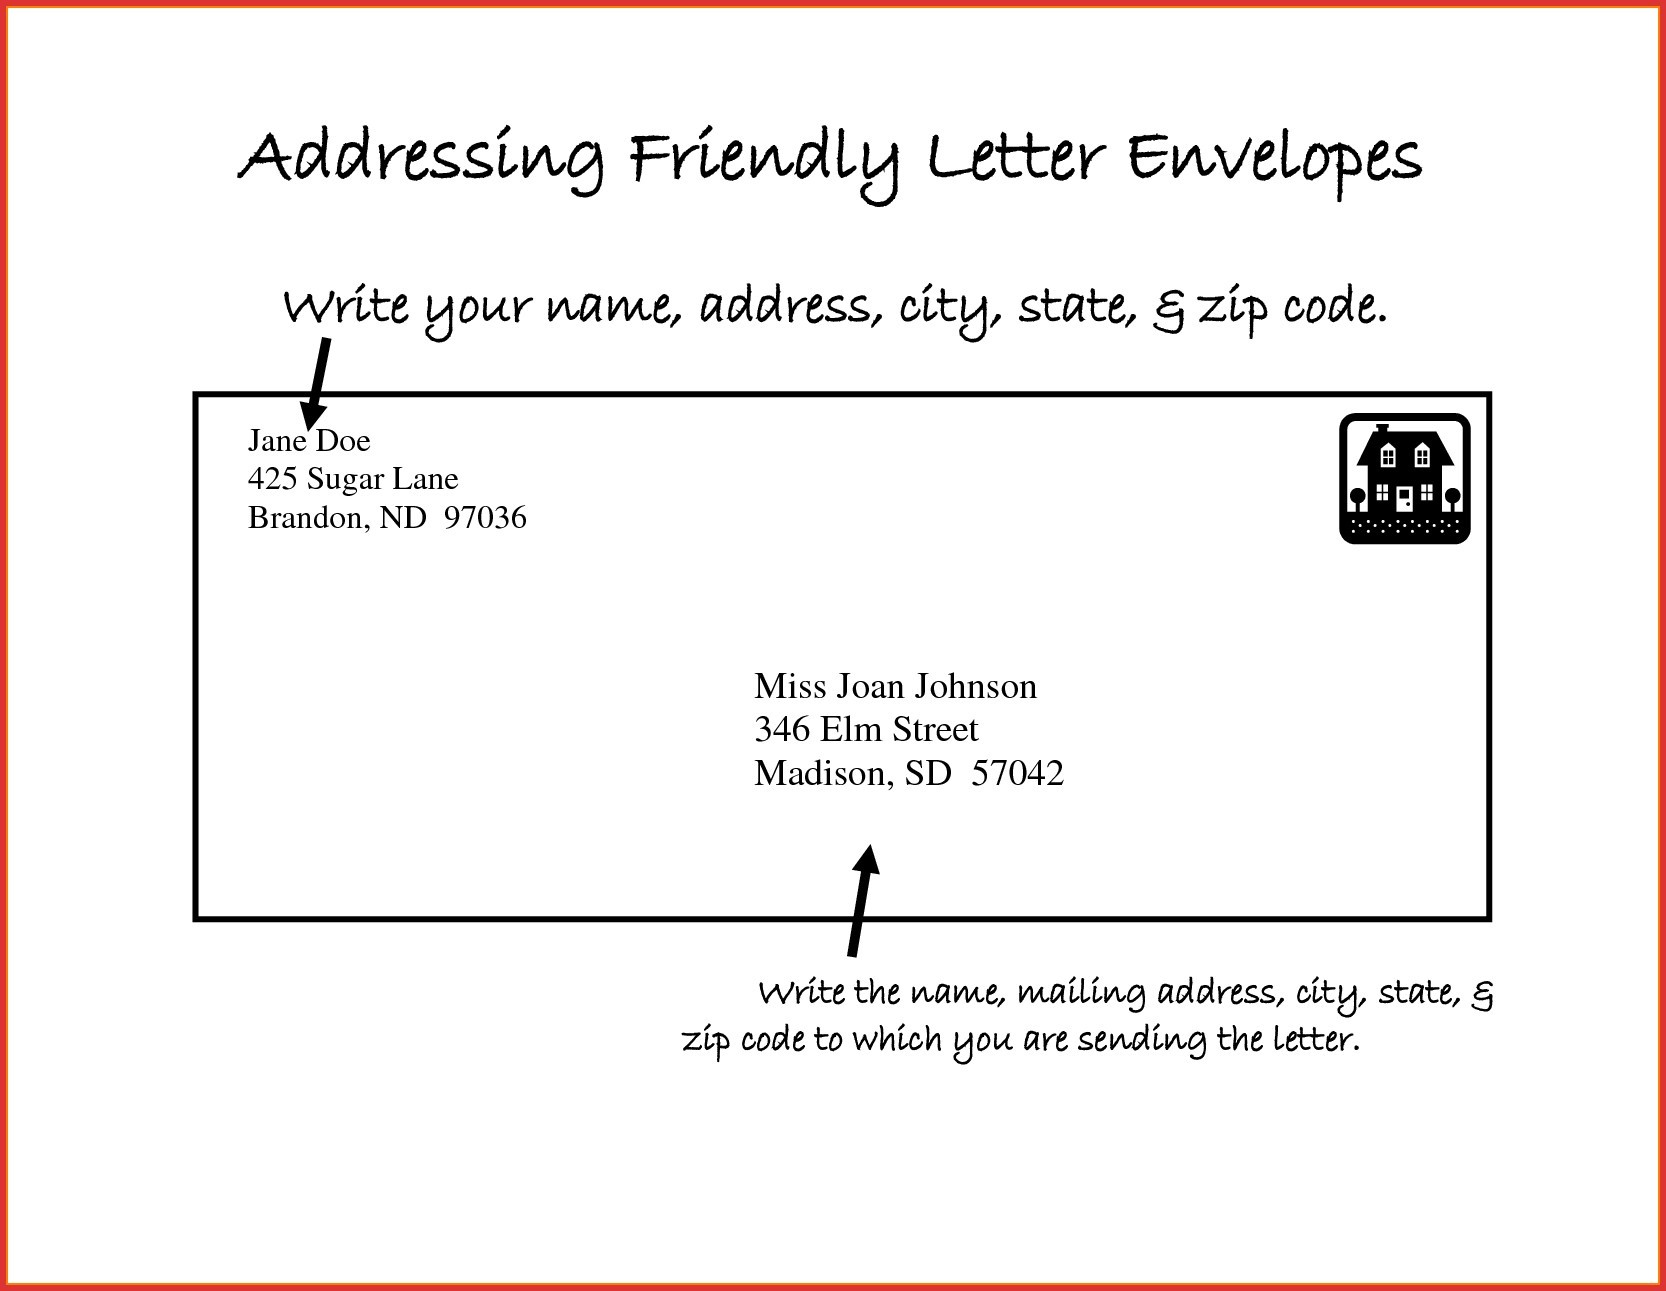 Letter Envelope Address Format Uk New Letter Format Uk Address 